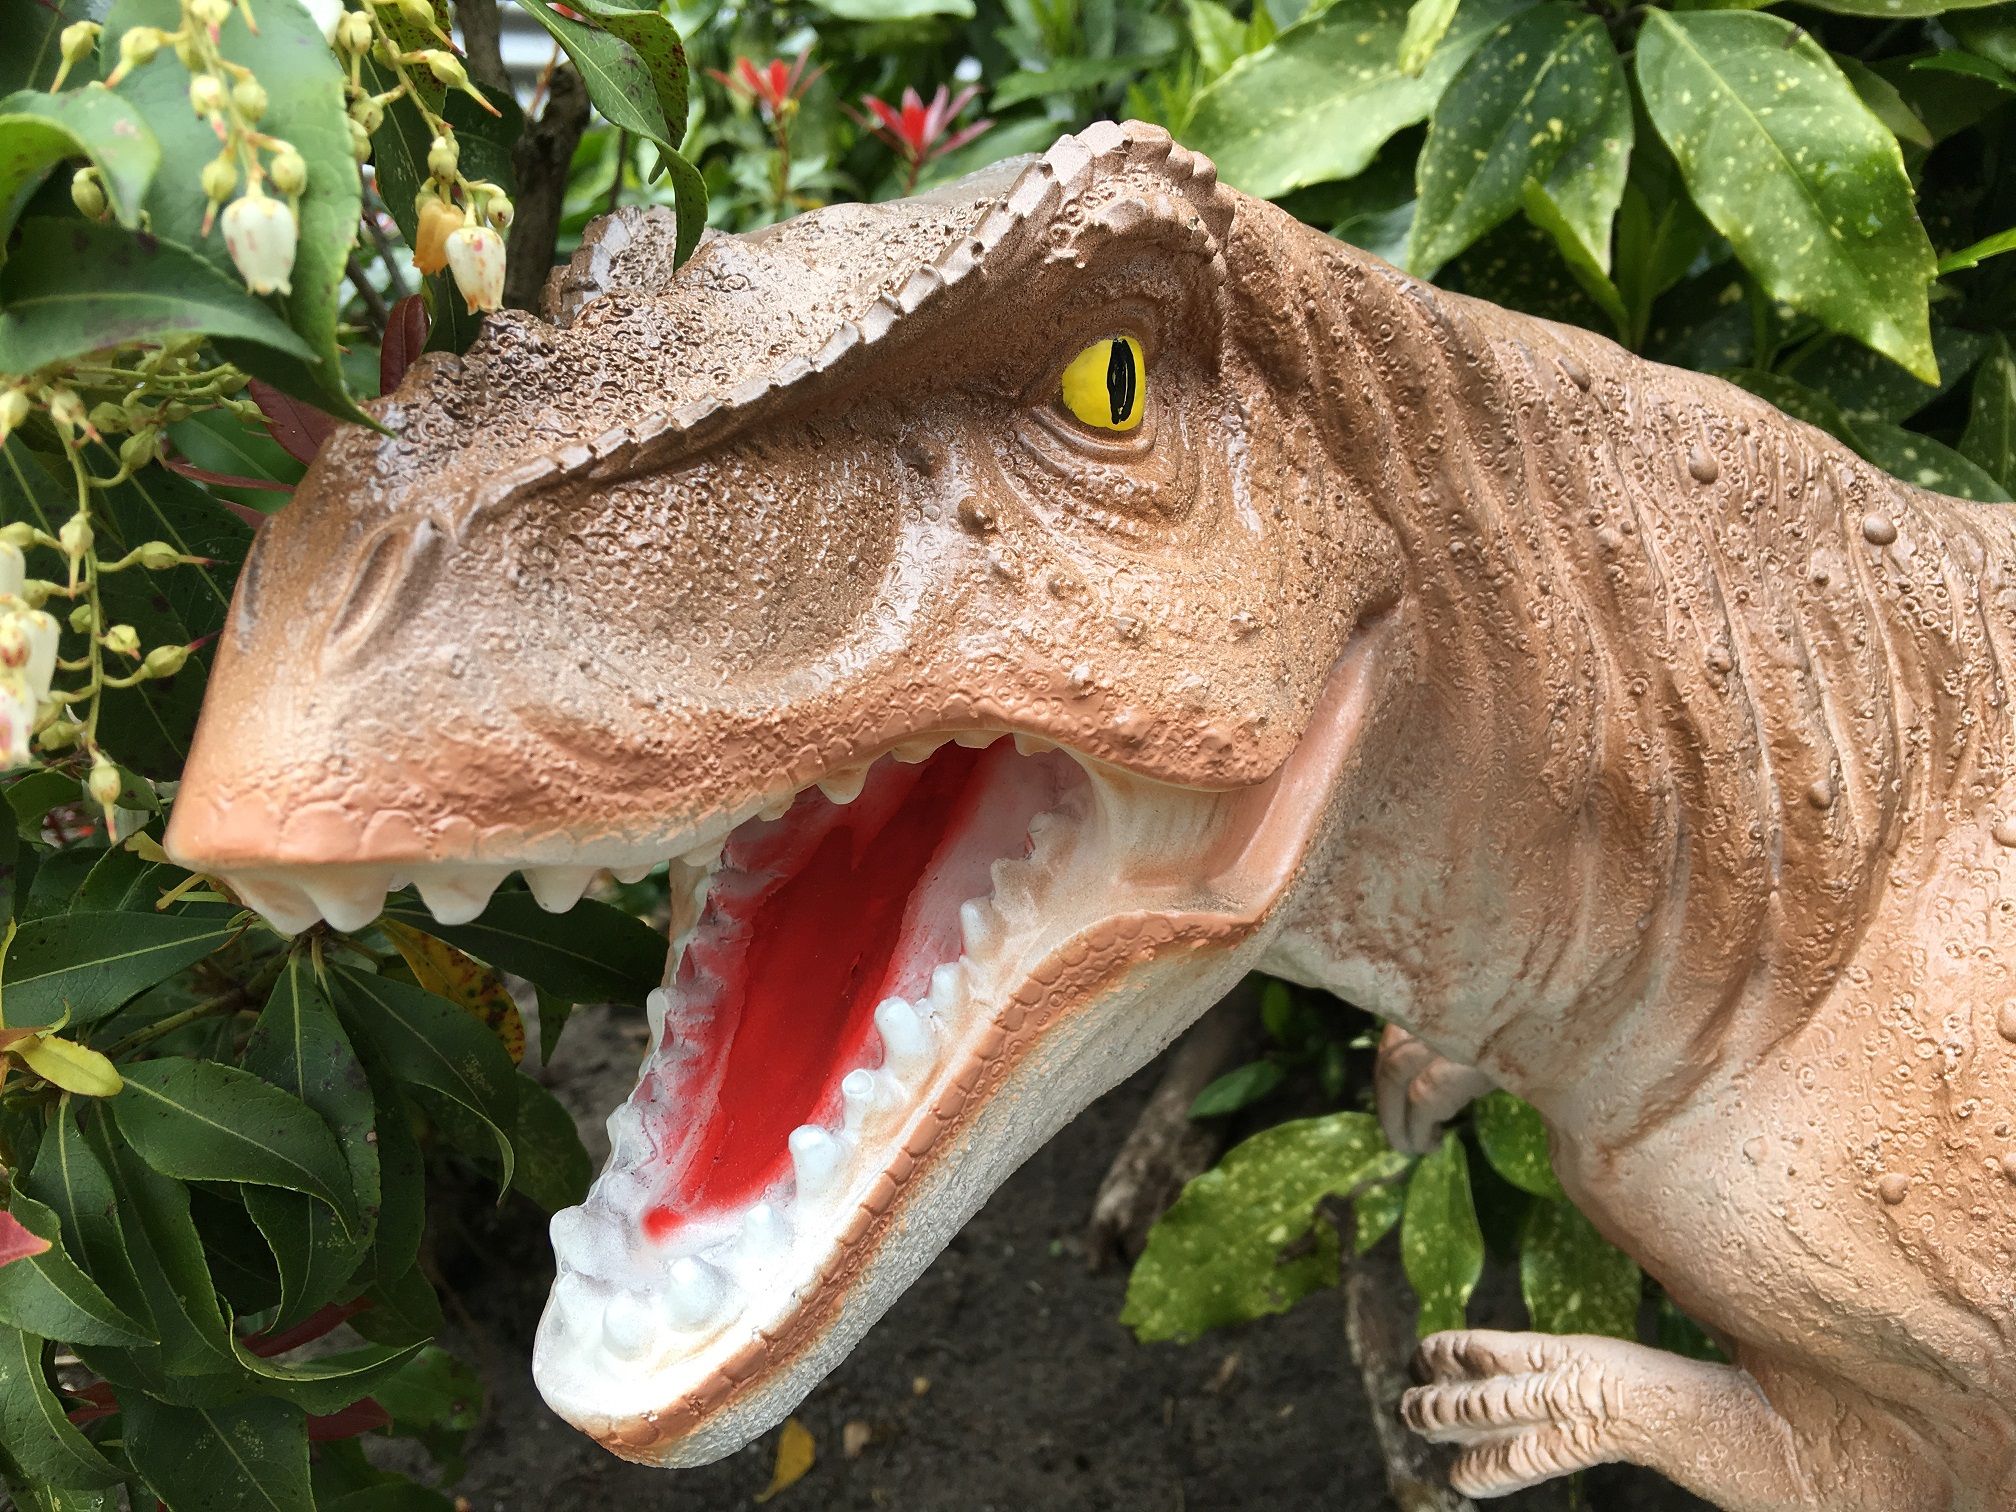 Dinosaurus, prachtige beeld van een Tyrannosaurus